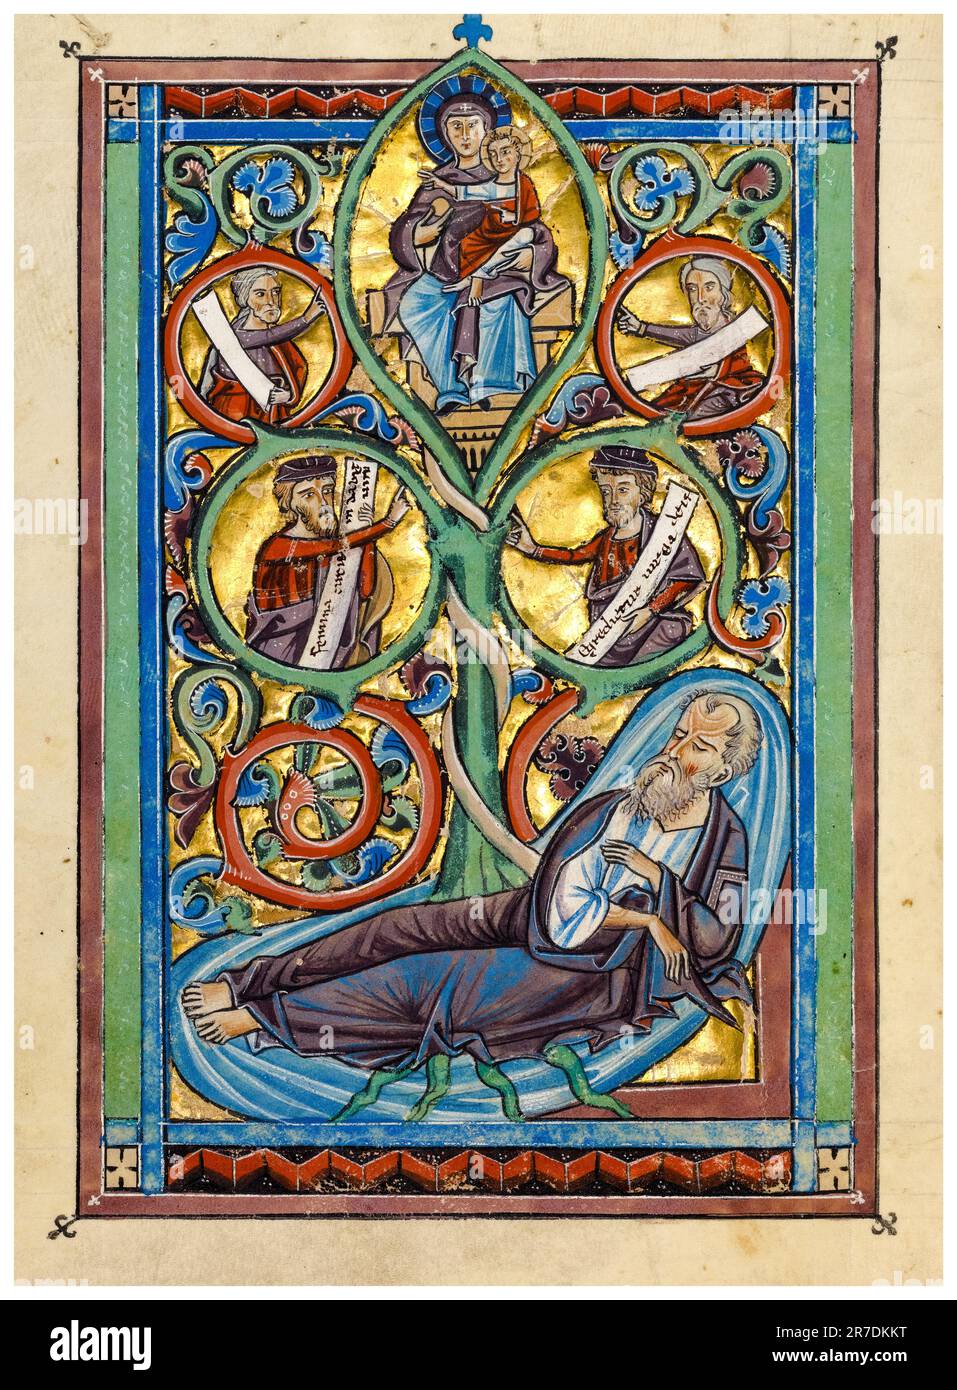 L'arbre de Jesse, 13th siècle manuscrit illuminé en tempera, feuille d'or et d'argent, 1240-1250 Banque D'Images